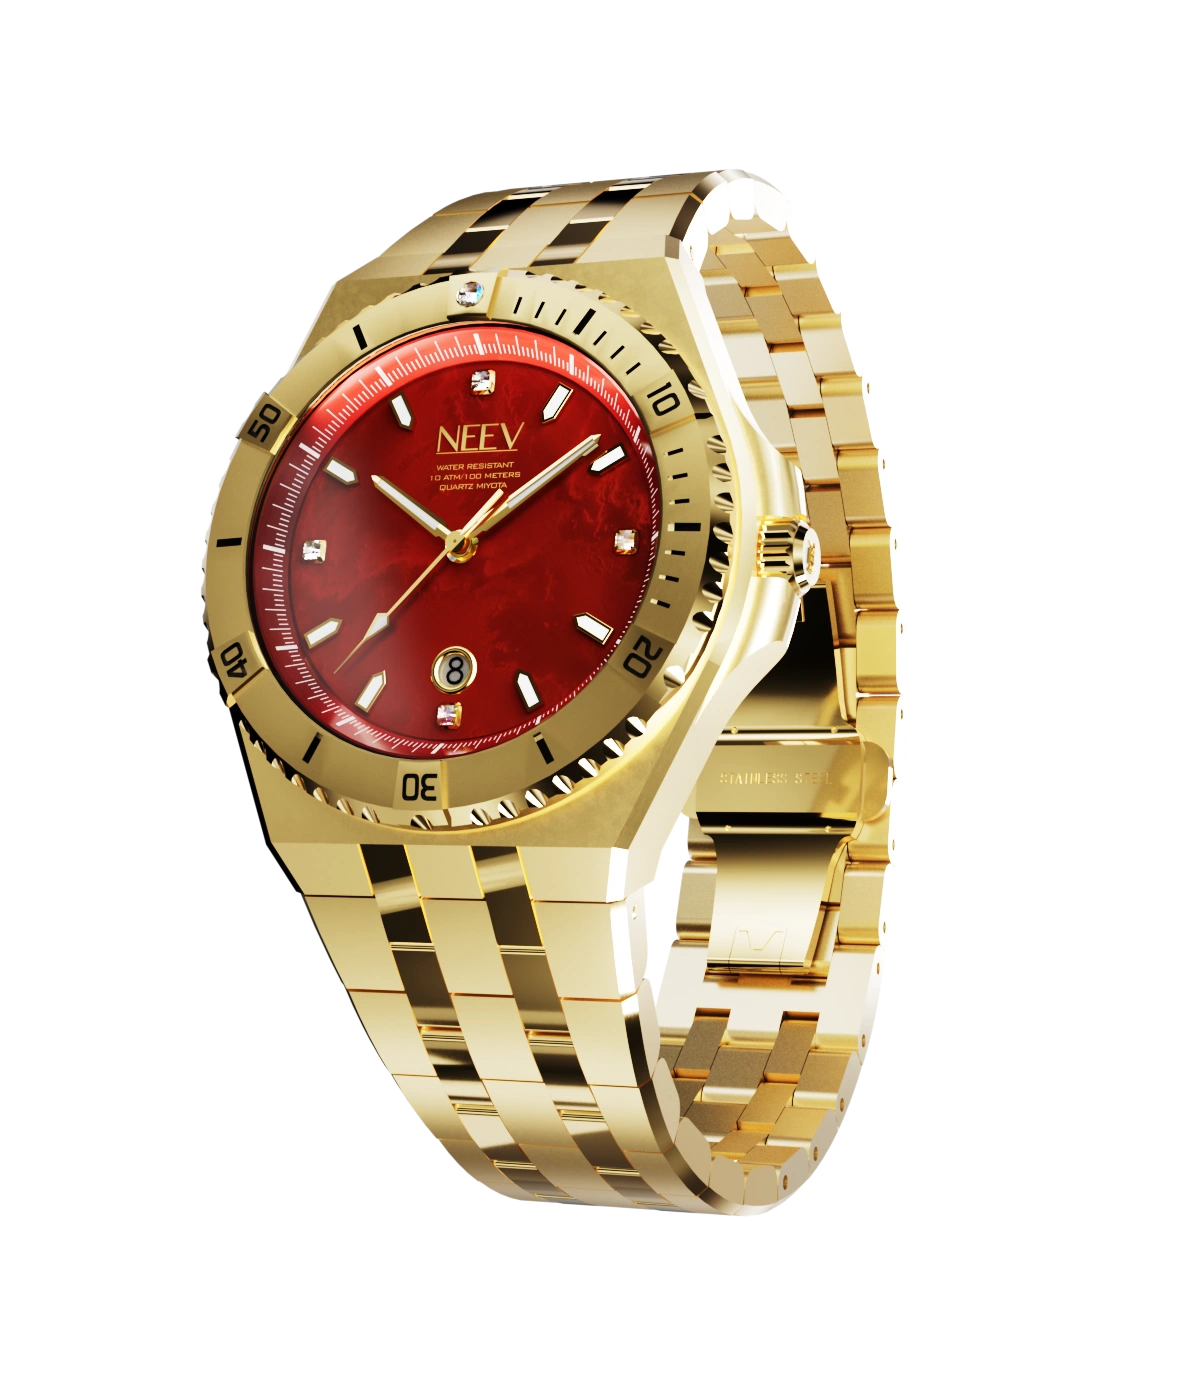 Scarlet watch